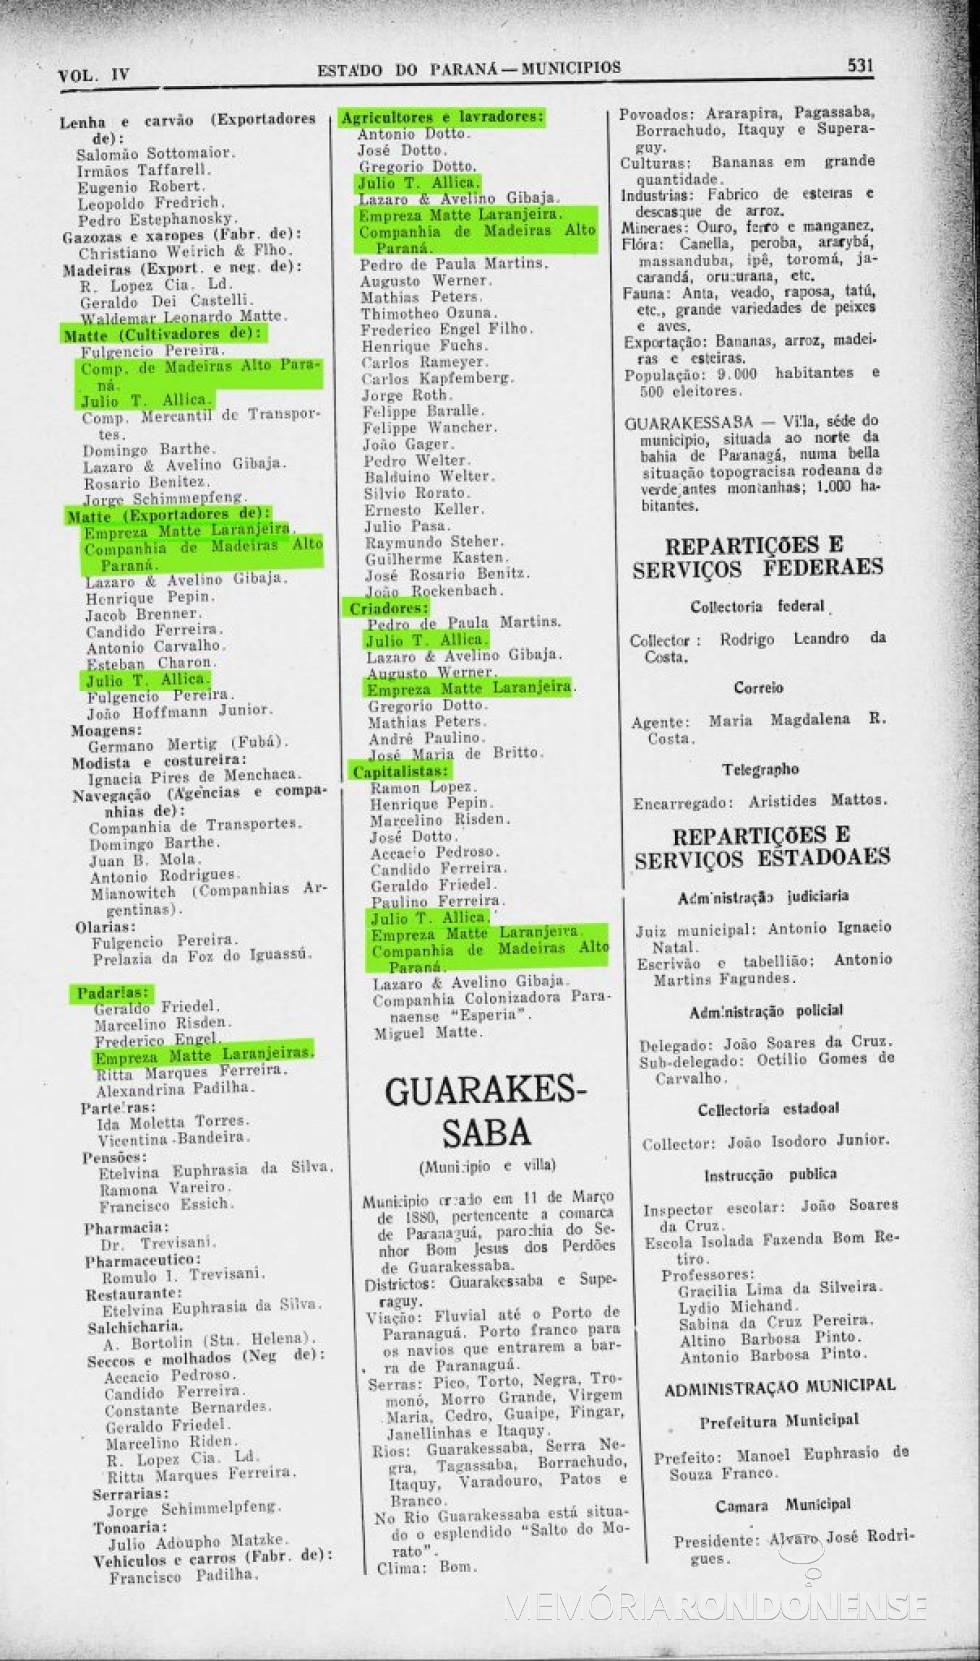 || Página 532 do Almanak Laemmert com a parte final da publicação do Censo 1930 de Foz do Iguaçu.
Imagem: Acervo Biblioteca Nacional - FOTO 4 -